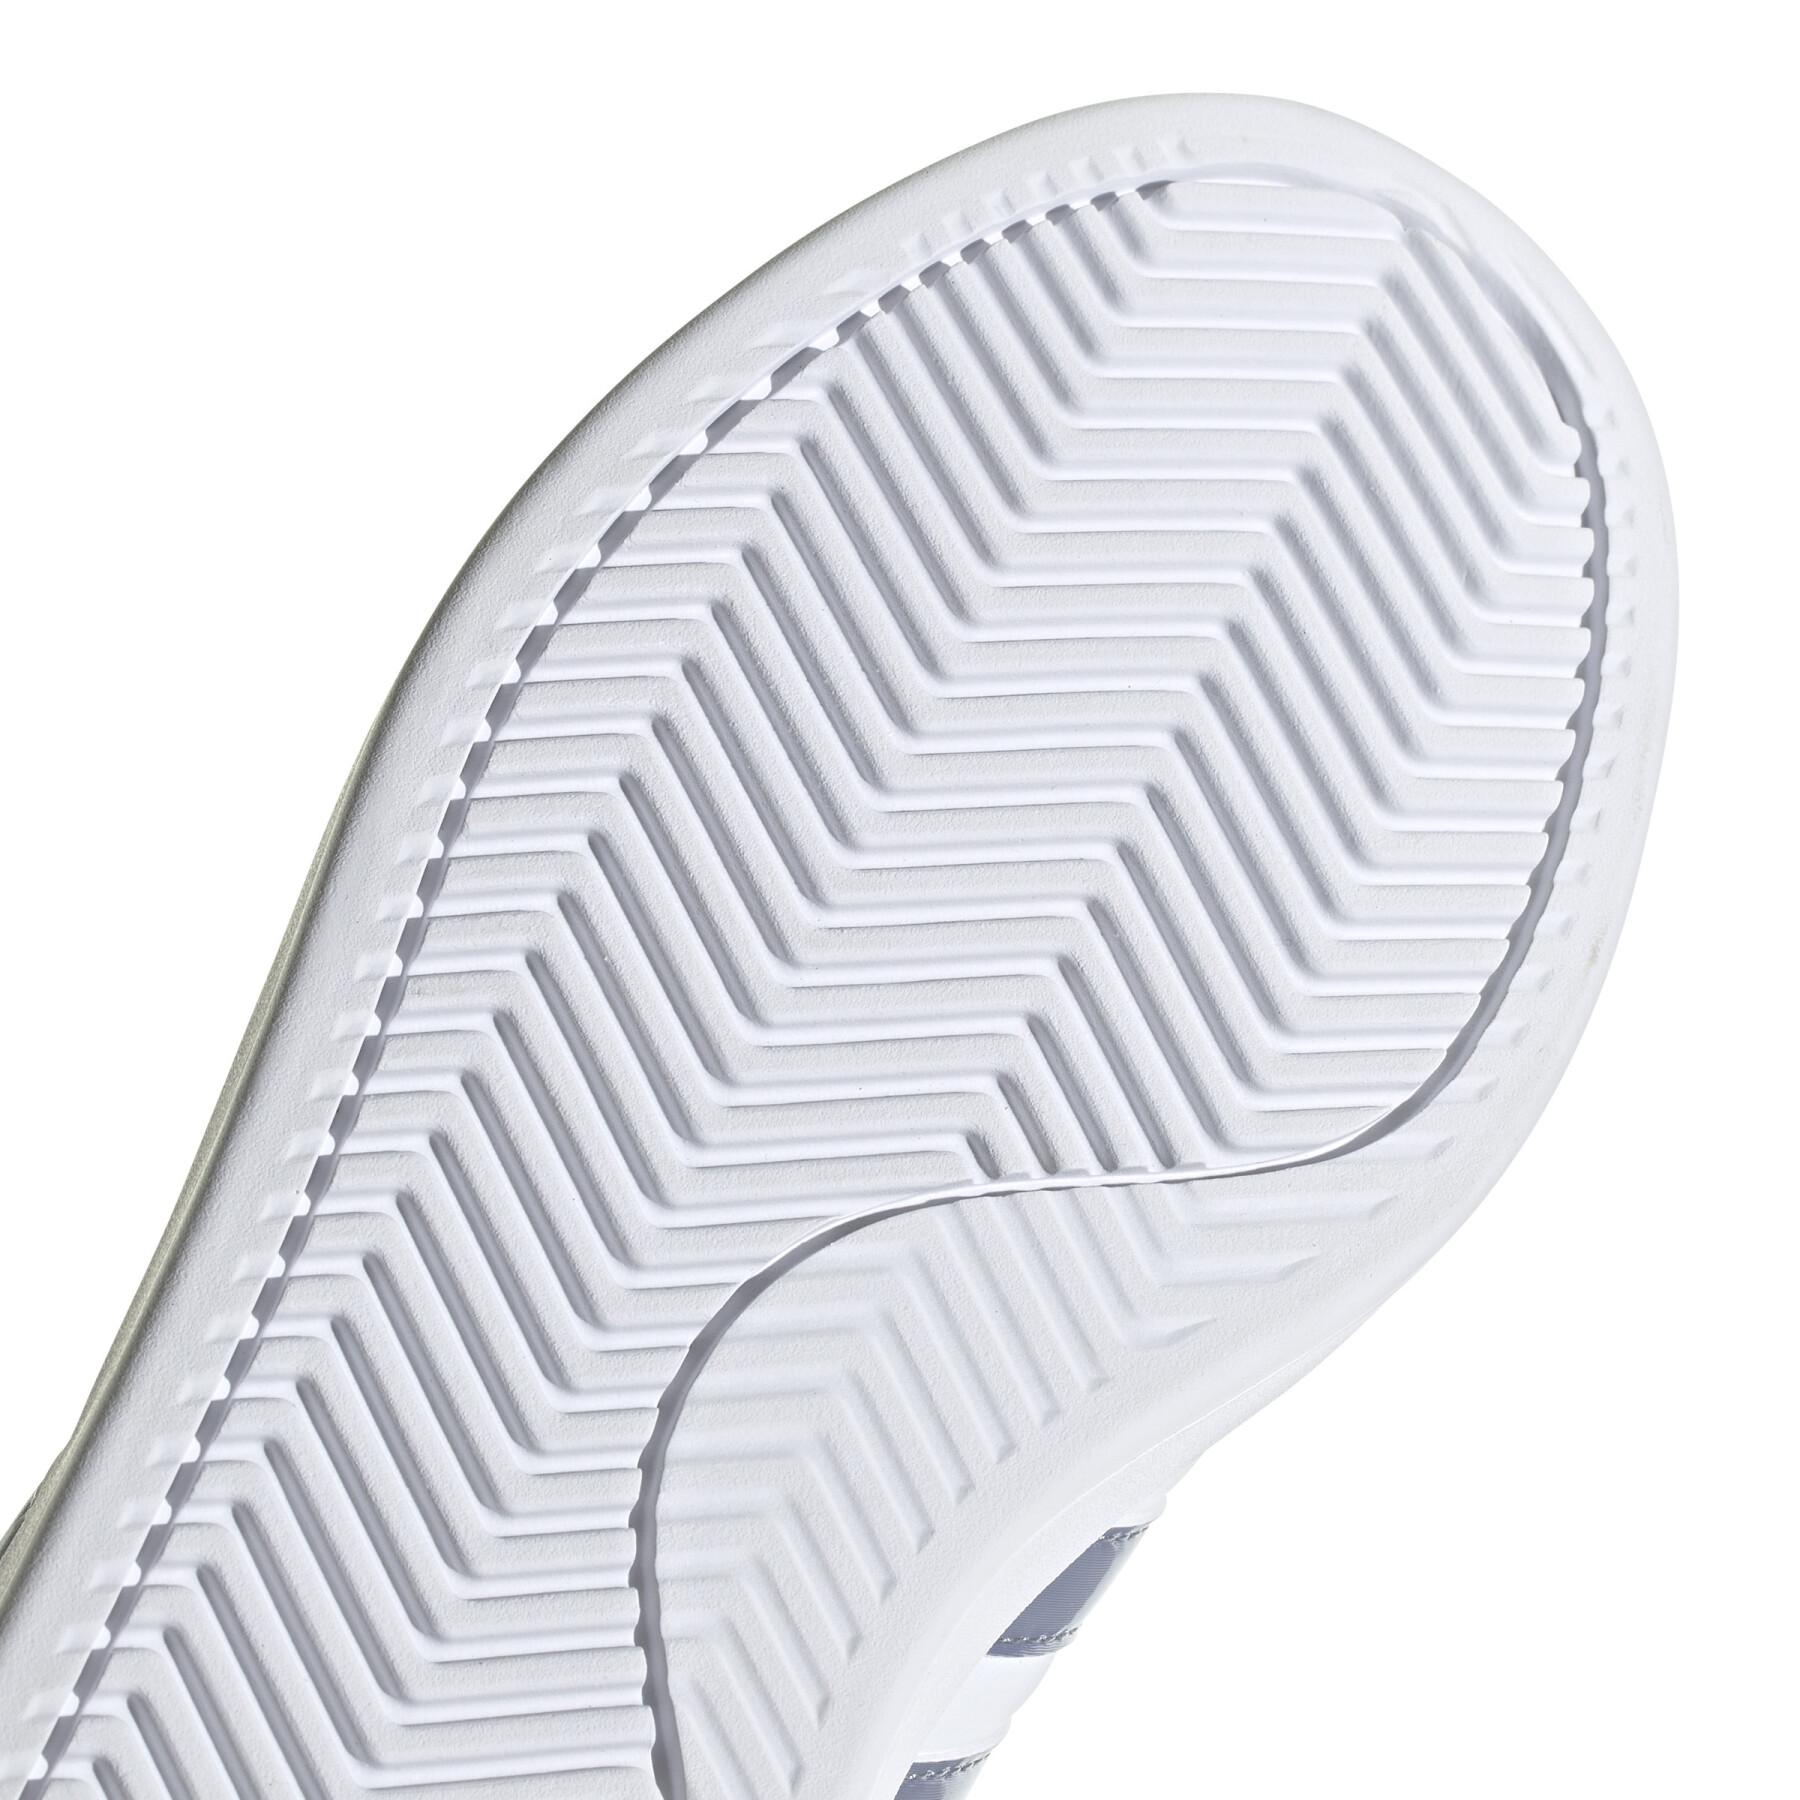 Zapatillas de deporte para mujeres adidas Grand Cloudfoam Comfort